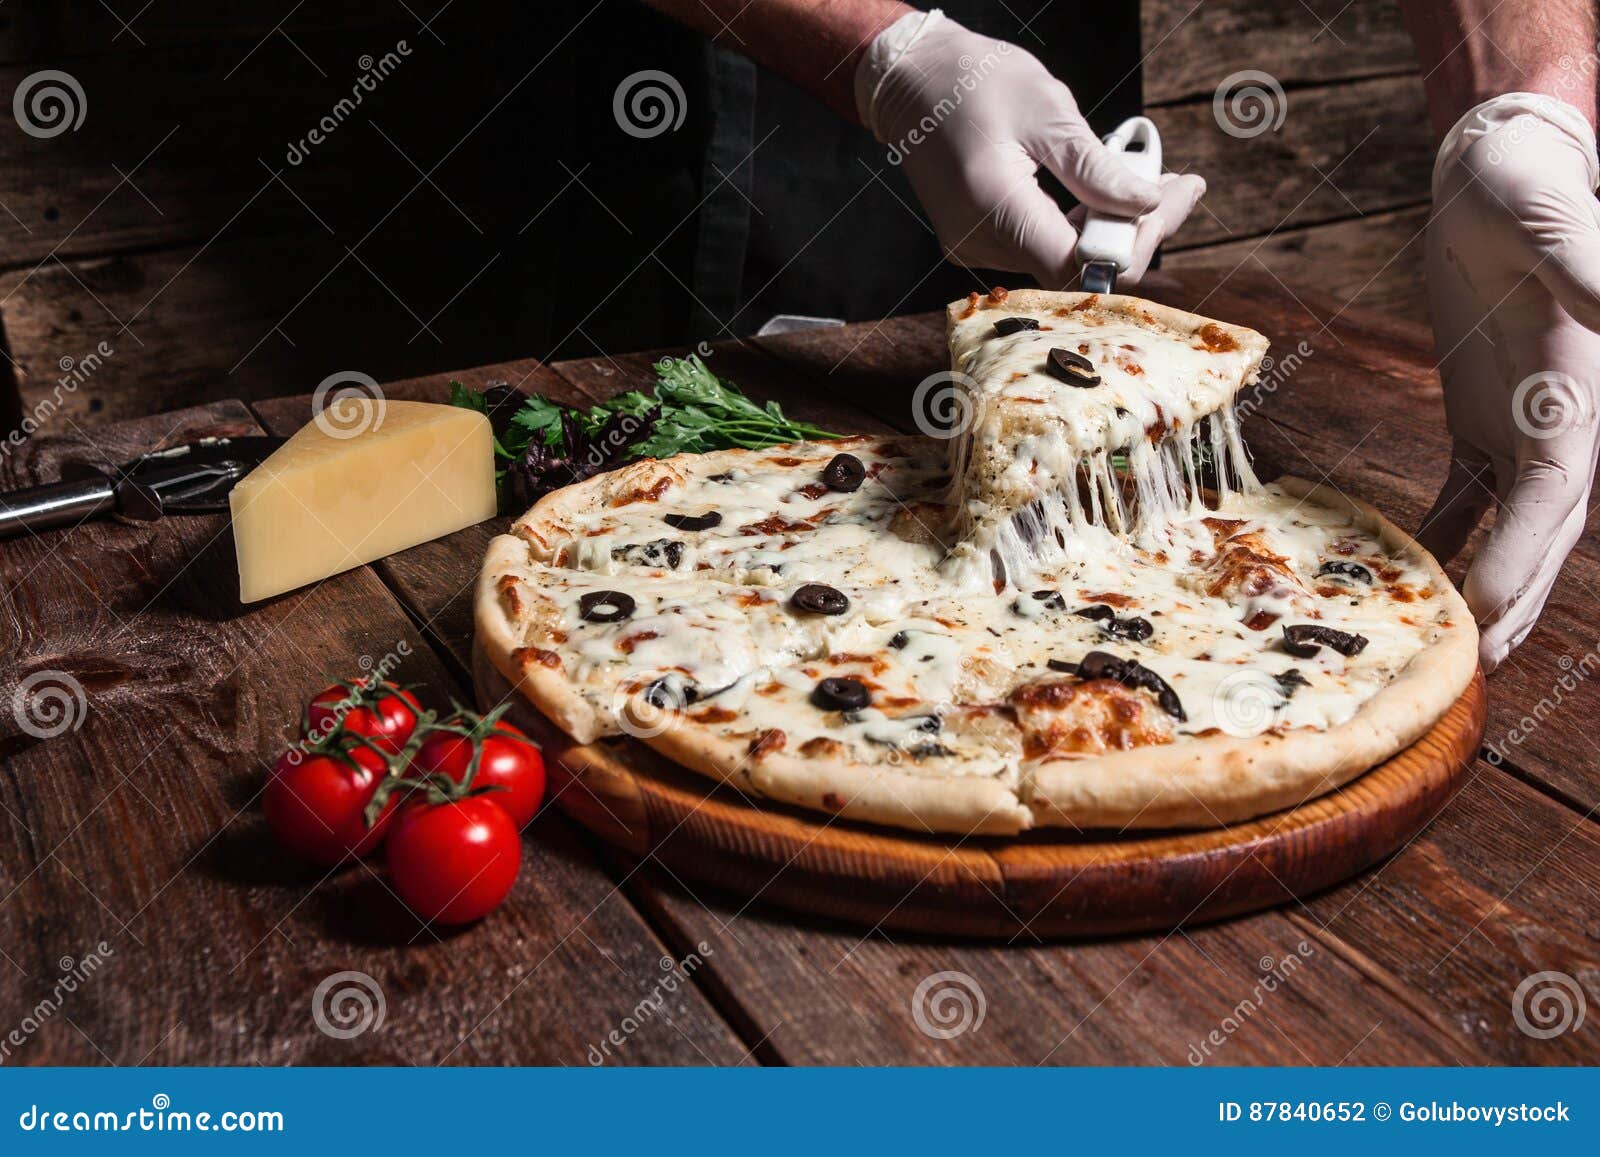 тесто для пиццы повар фото 86